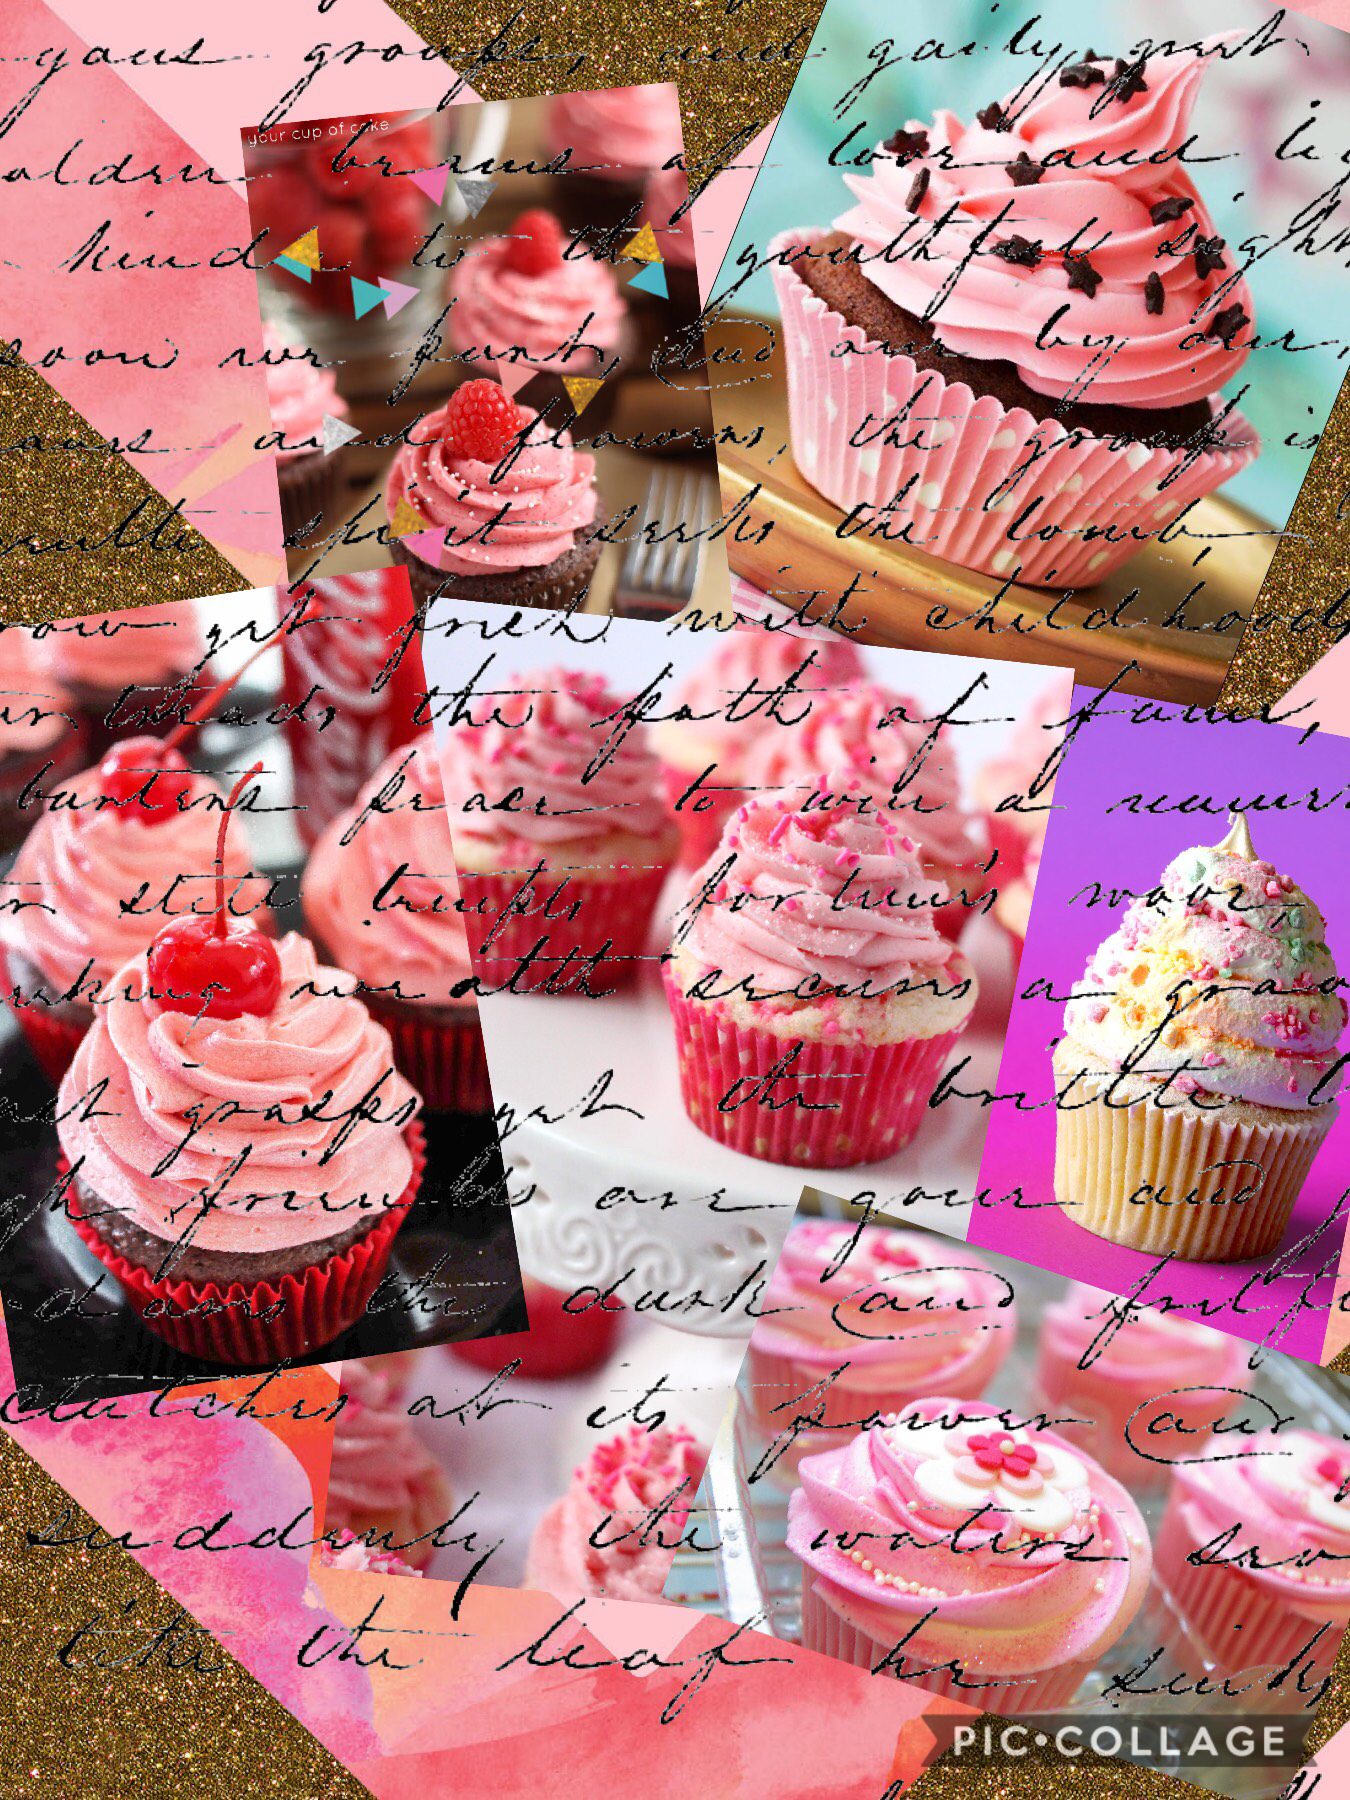 I love cupcake and you🤗